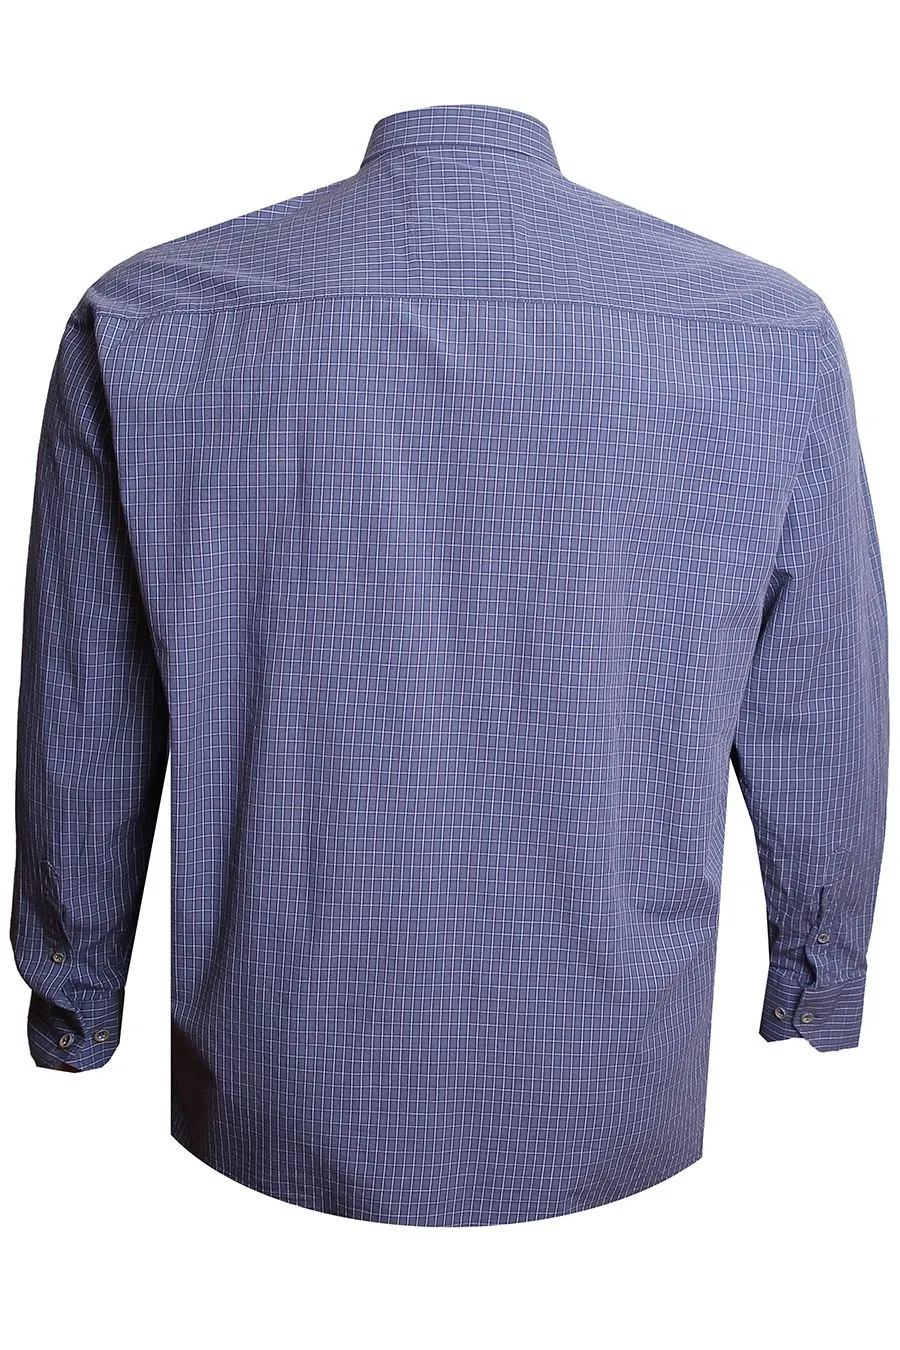 Рубашка серо-голубая в клетку большого размера